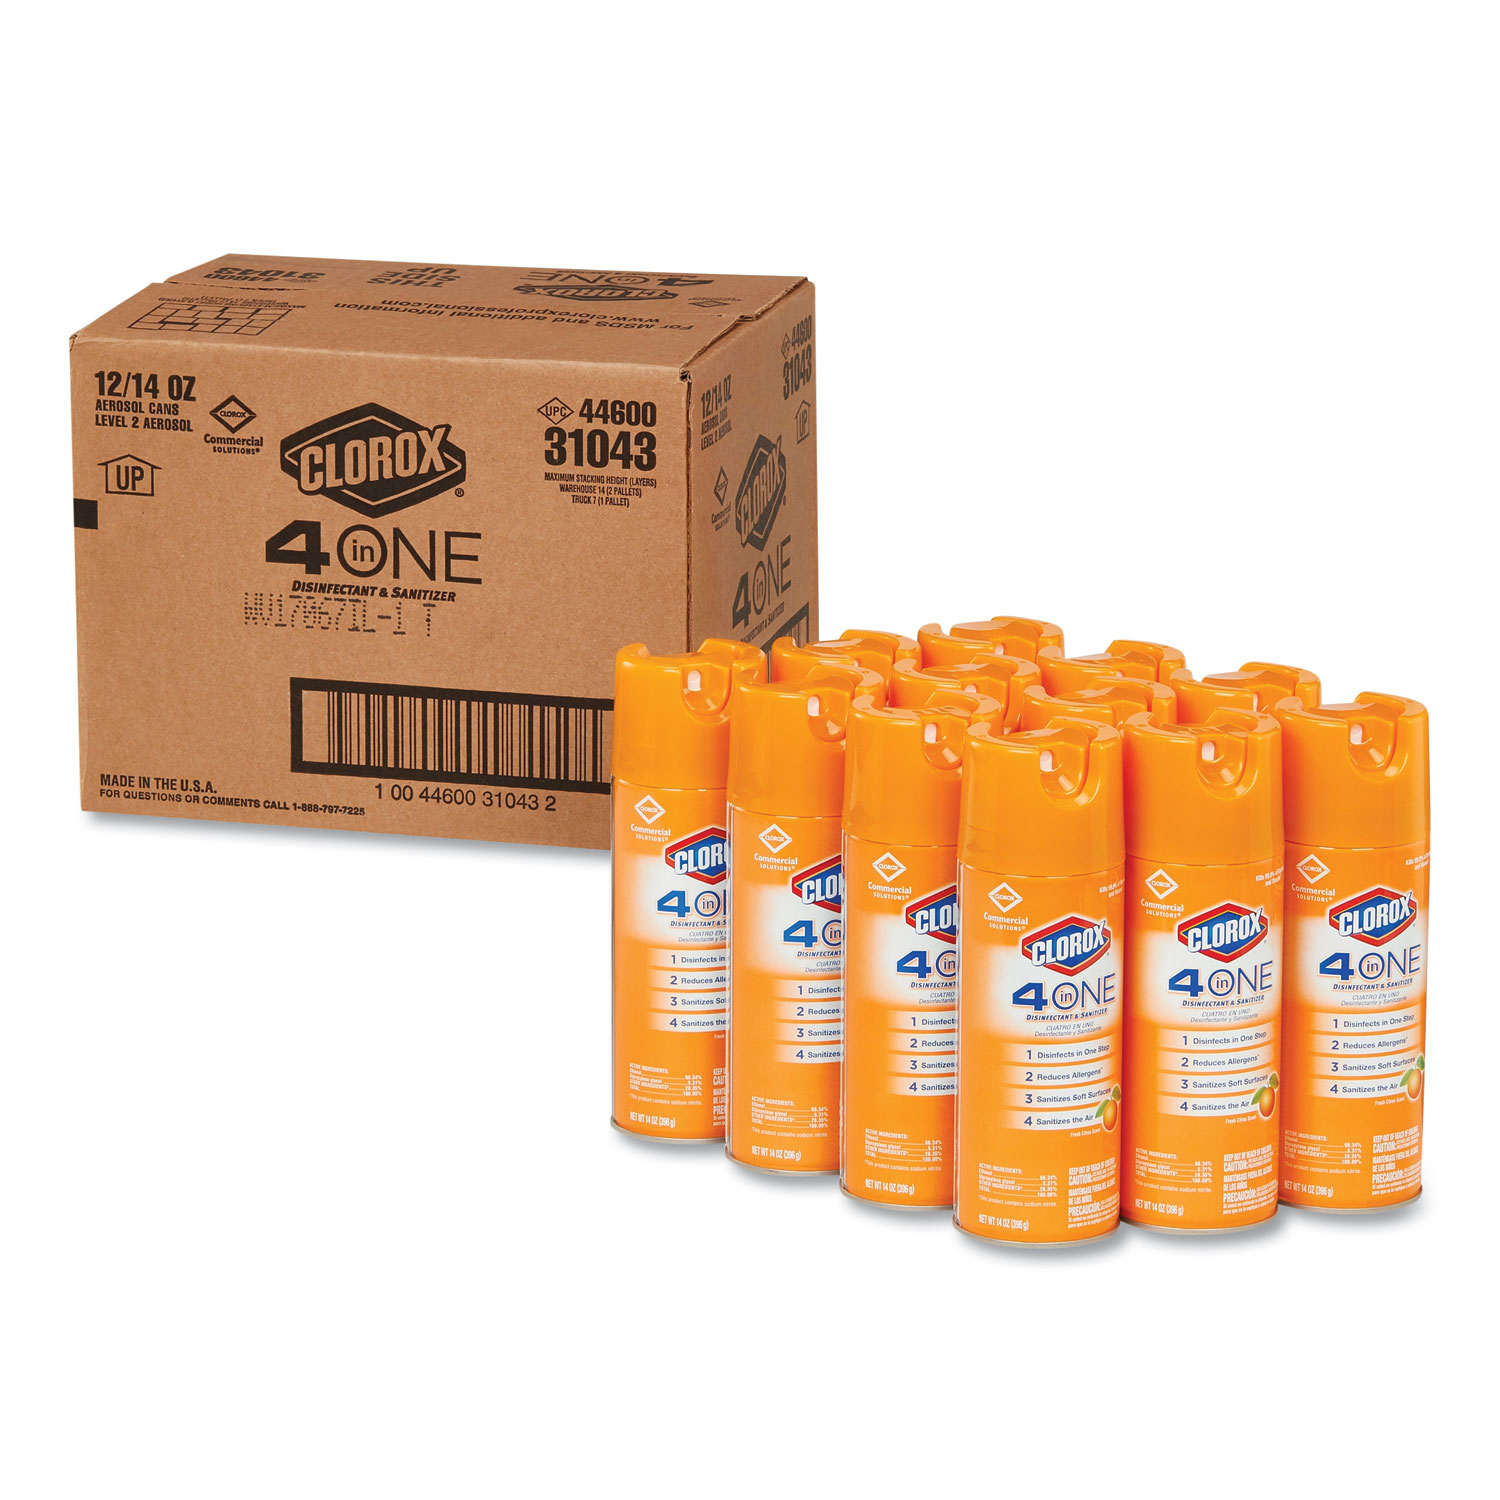  Clorox CLO 31043 4-in-One Disinfectant and Sanitizer, Citrus, 14 oz Aerosol, 12/Carton (CLO31043CT) 